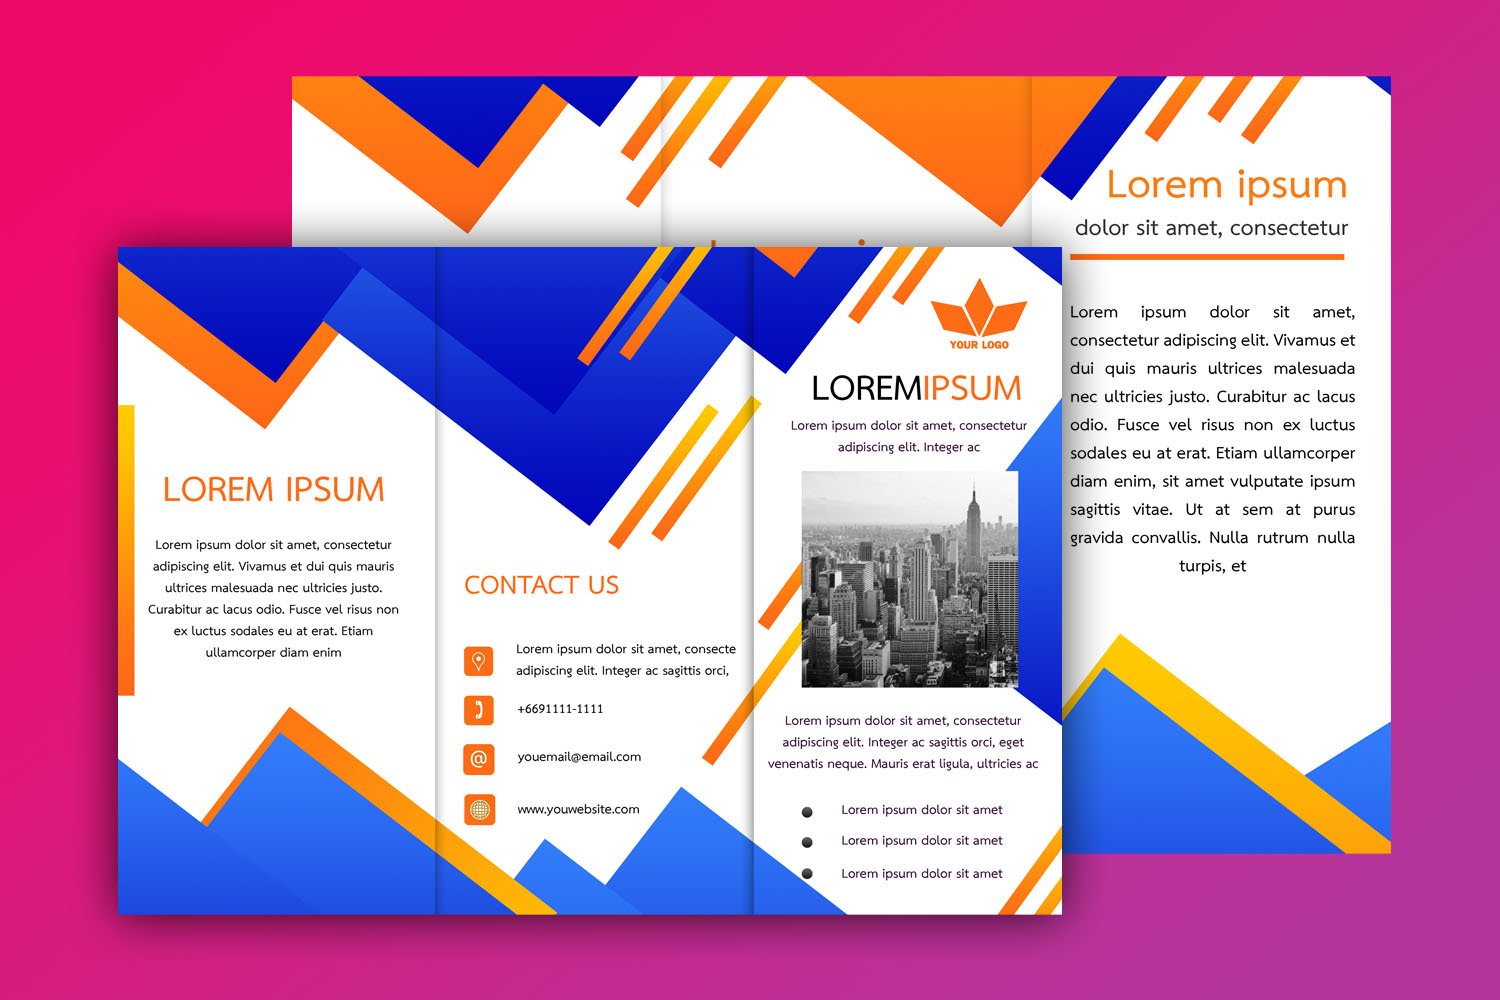 ดาวน์โหลดแผ่นพับสวยๆ สามารถแก้ไขได้พร้อมไฟล์ Psd และ Word สีน้ำเงิน-สีส้ม/  Download Brochure Template Design | Graphypik